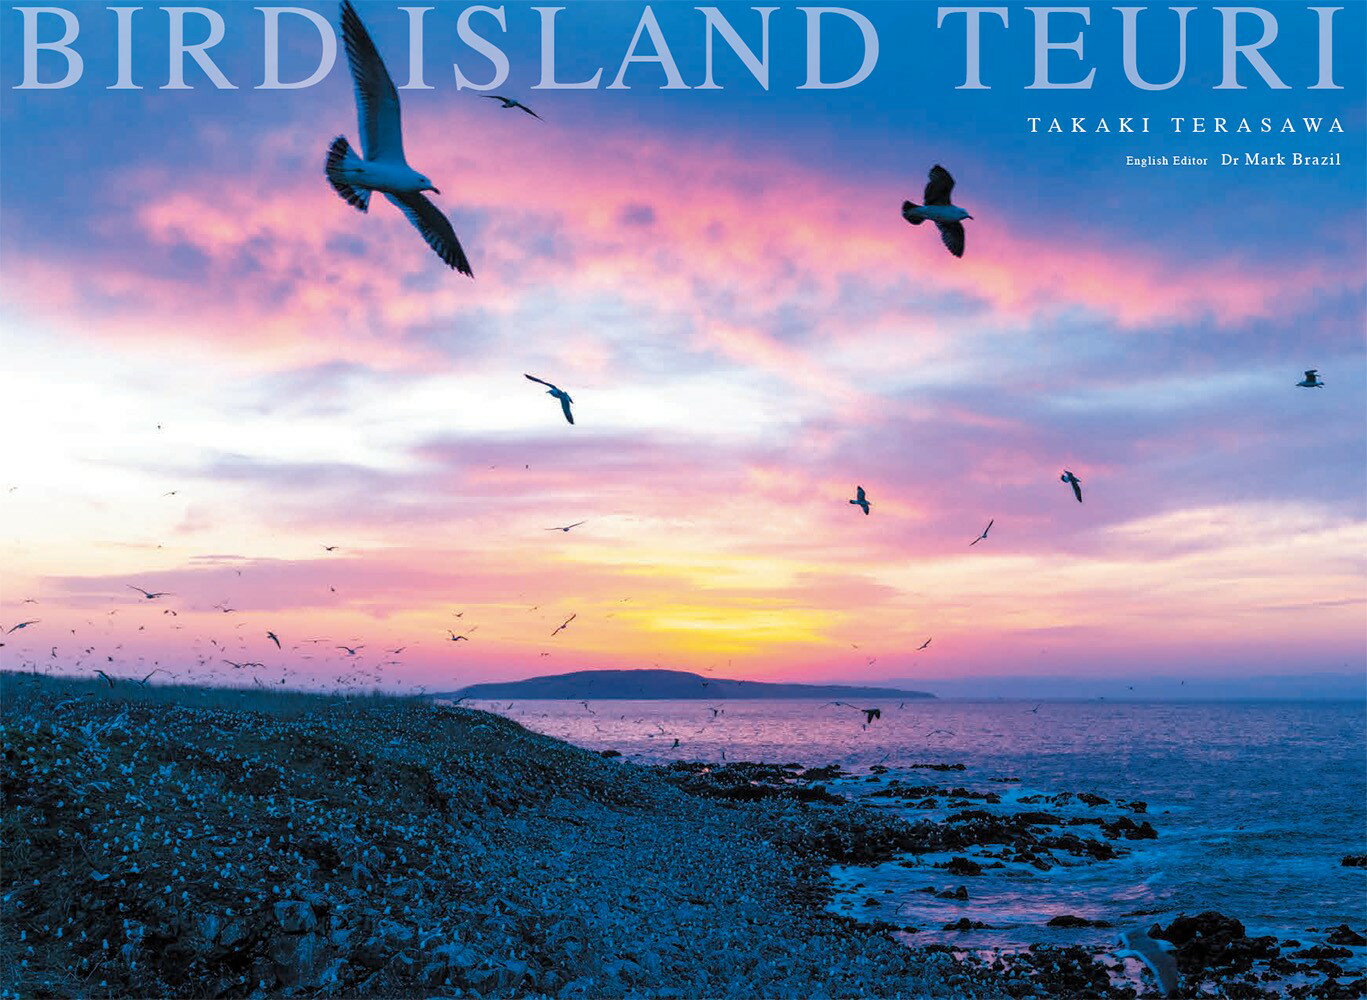 BIRD ISLAND TEURI